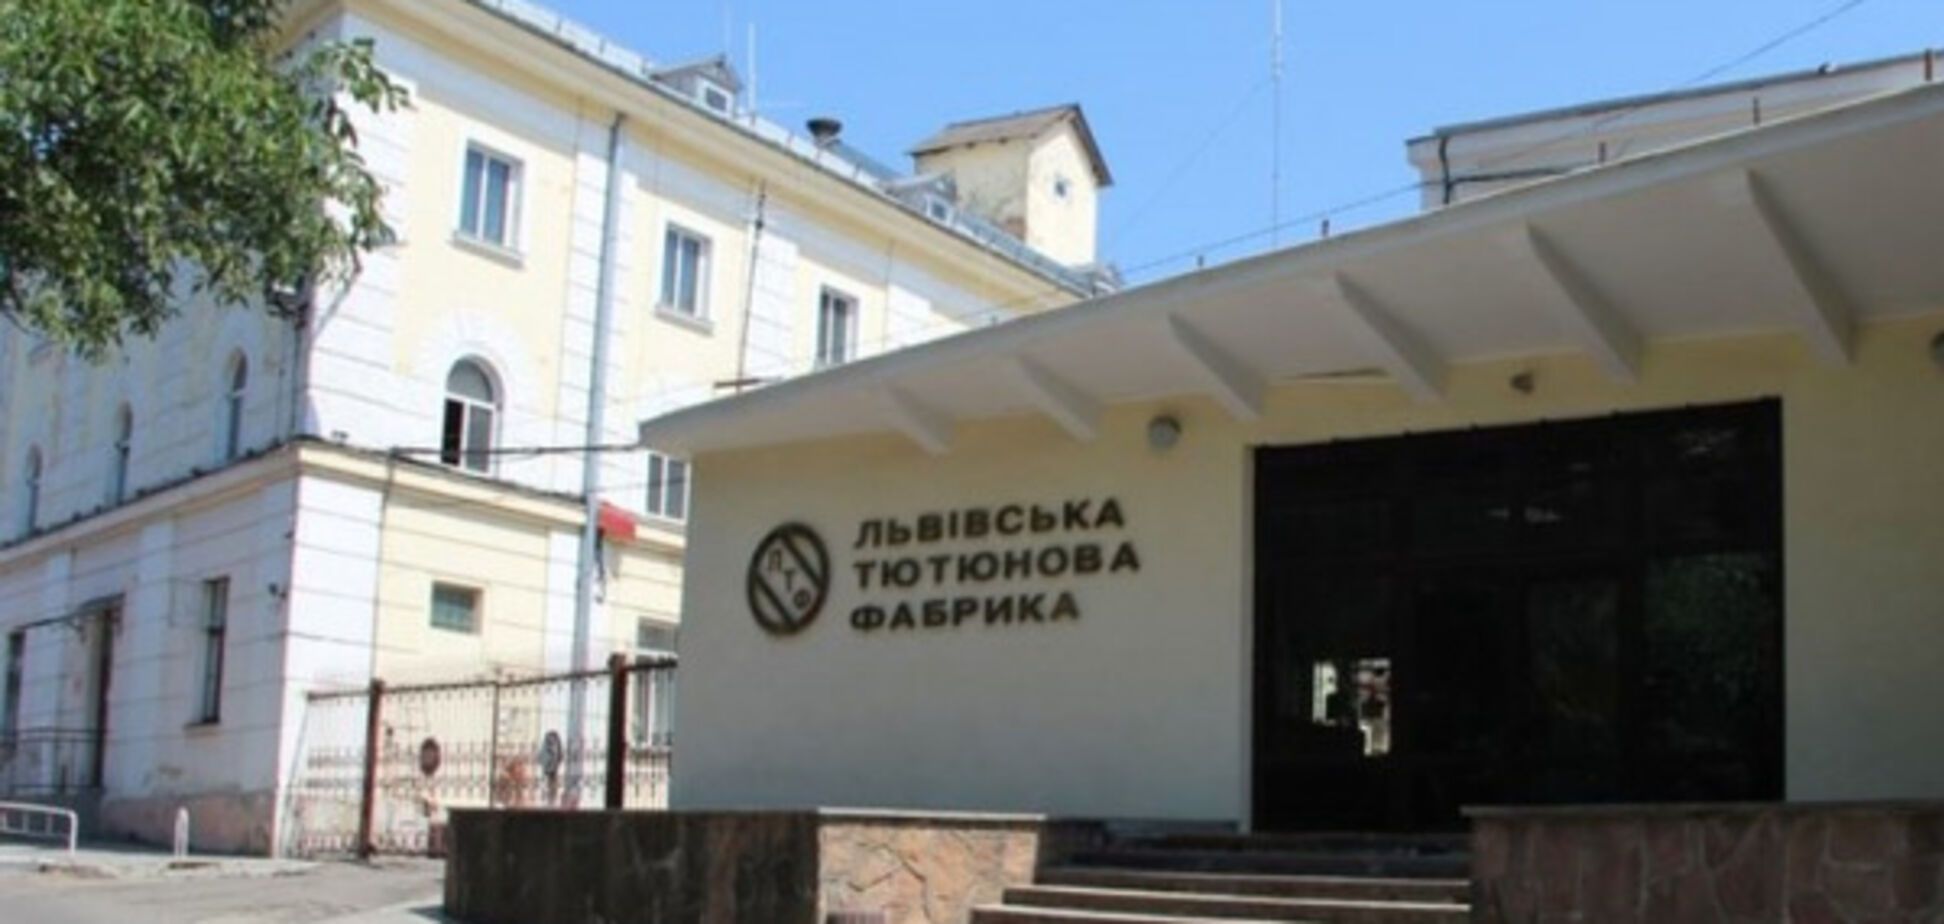 Успех Львовской табачной фабрики связан с недоплатой налогов - СМИ